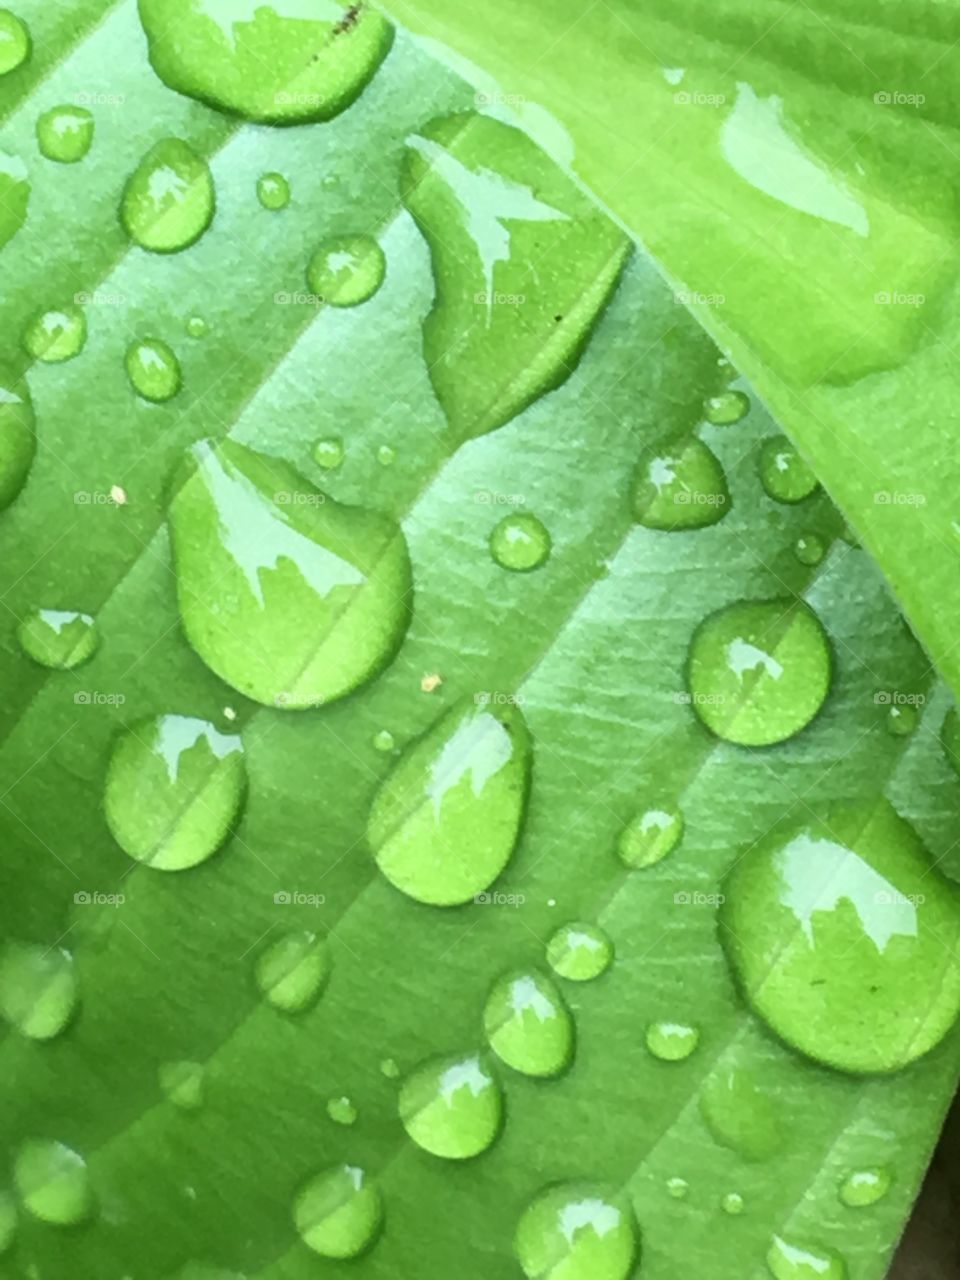 Raindrops on hostas leaf